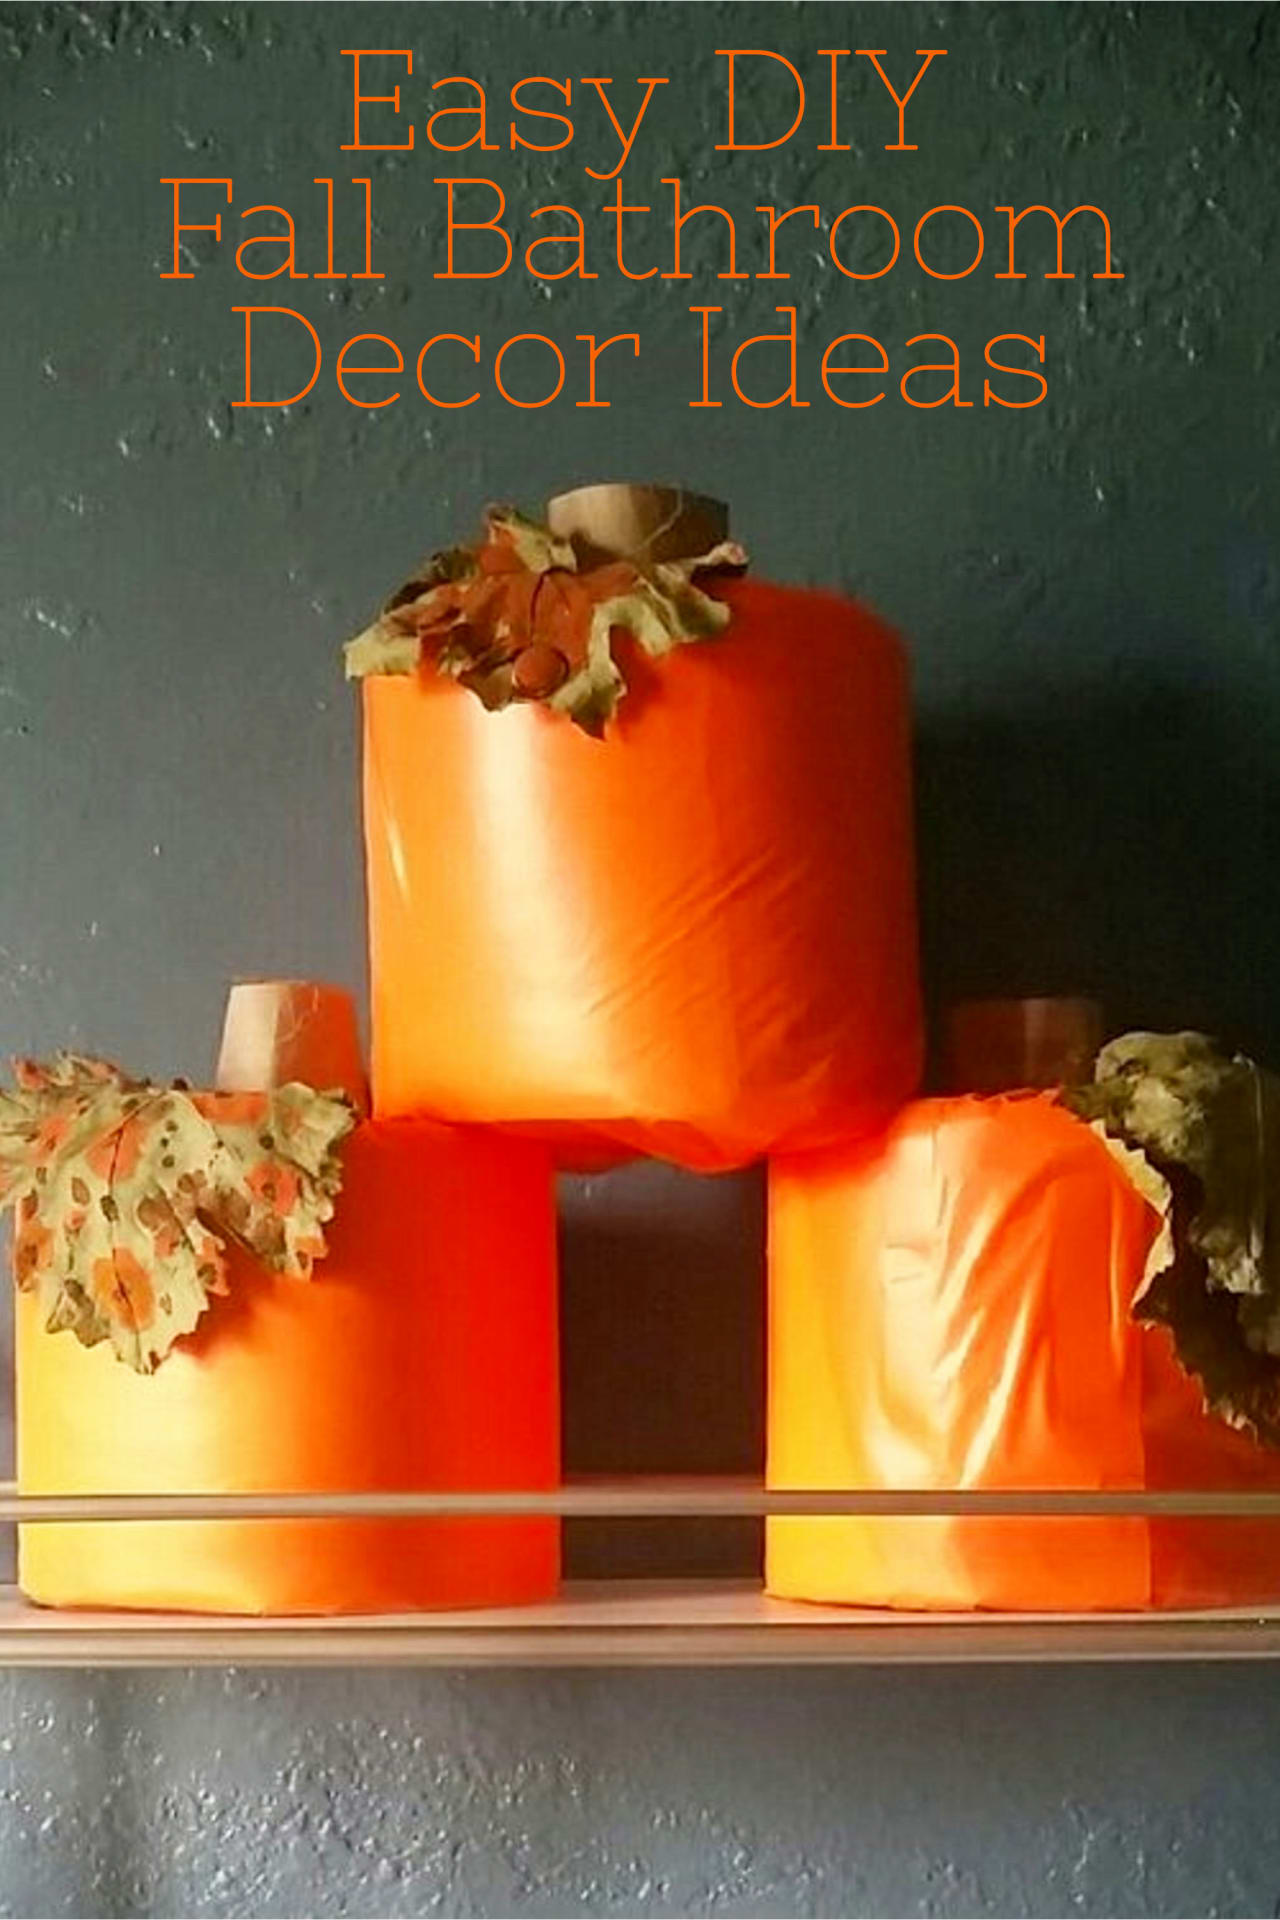 Fall pumpkin decor ideas for your bathroom - Easy DIY pumpkin decorating ideas to decorate for Fall and Autumn in your bathroom